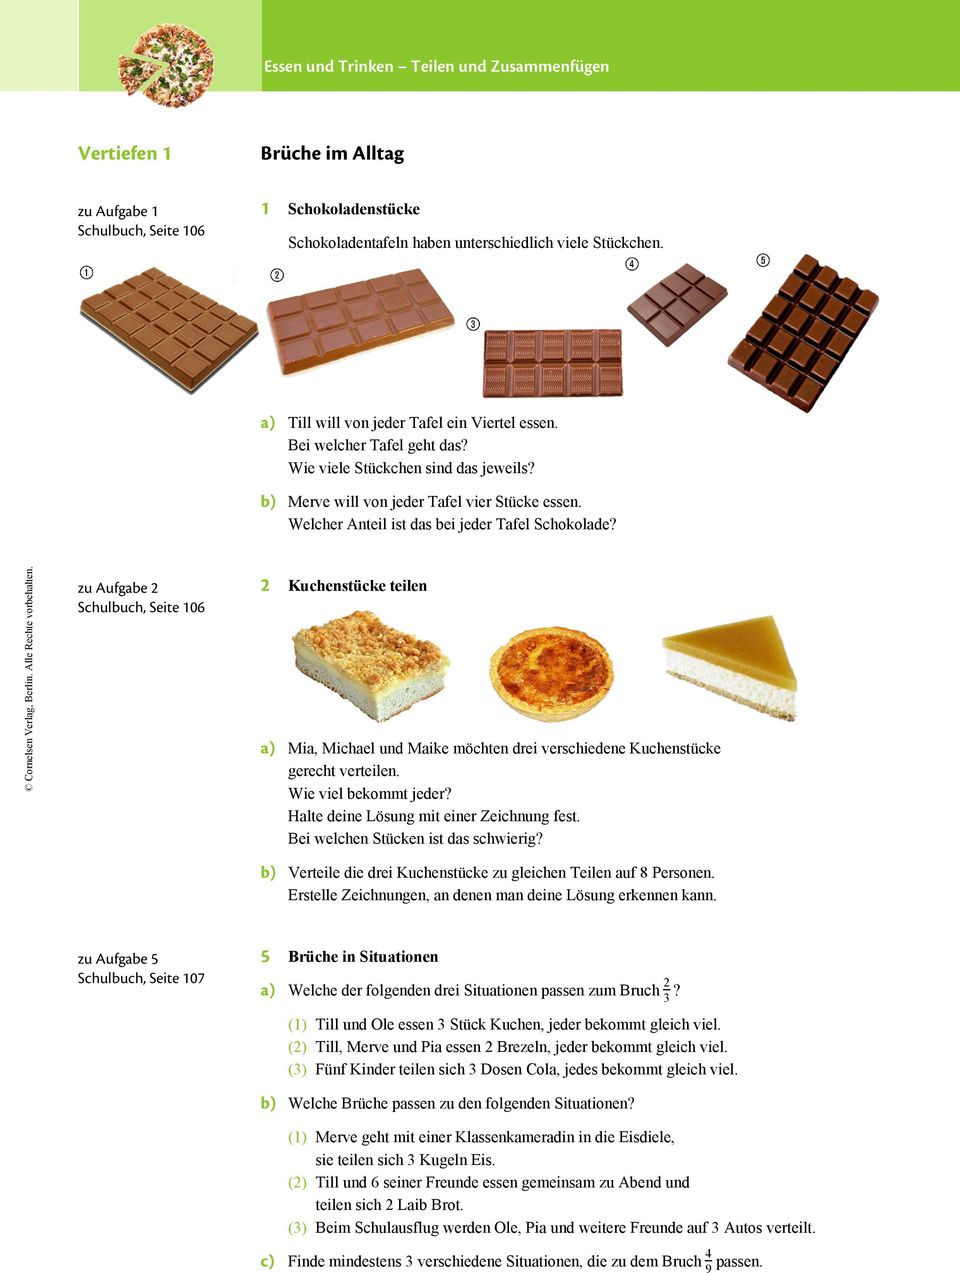 Welcher Anteil ist das bei jeder Tafel Schokolade? zu Aufgabe Schulbuch, Seite 06 Kuchenstücke teilen a) Mia, Michael und Maike möchten drei verschiedene Kuchenstücke gerecht verteilen.